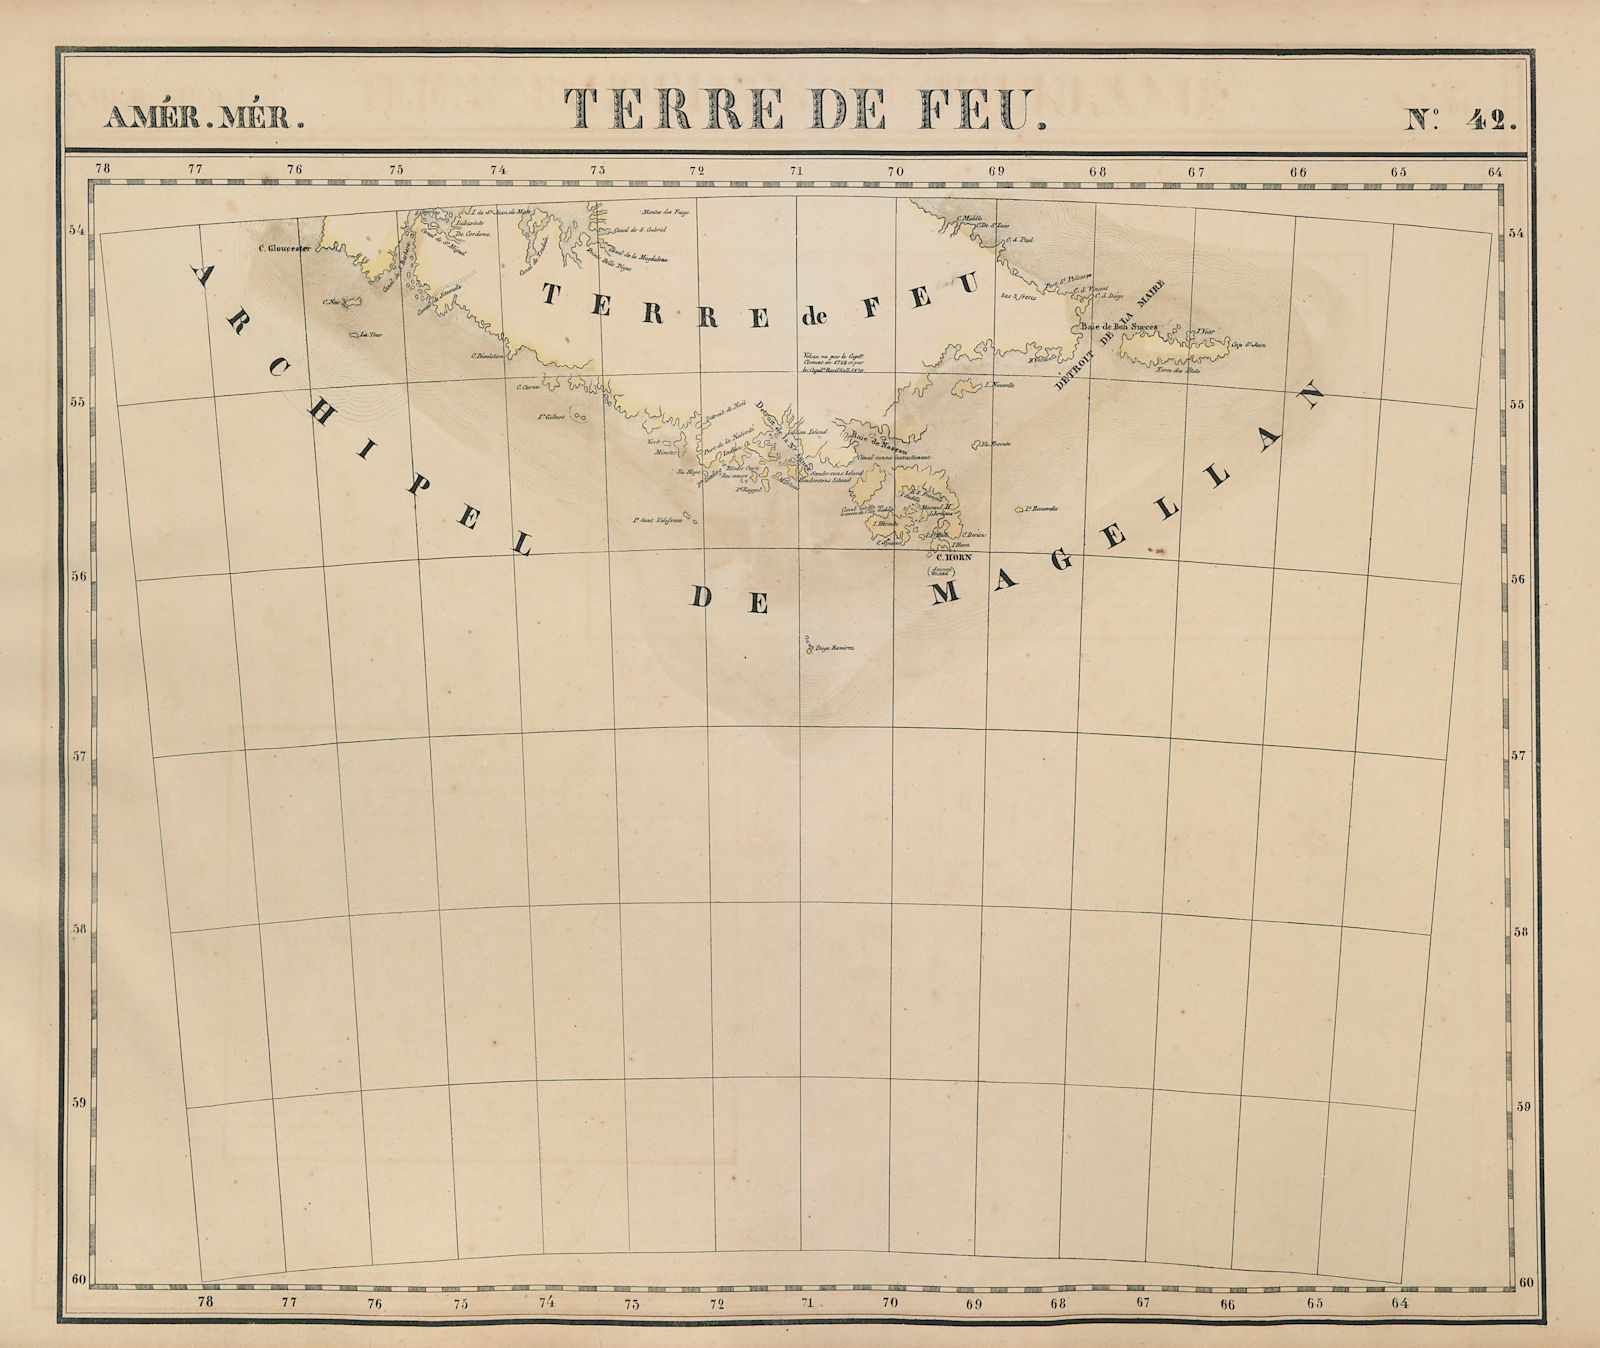 Amér Mér Terre de Feu #42 Tierra del Fuego Argentina Chile VANDERMAELEN 1827 map